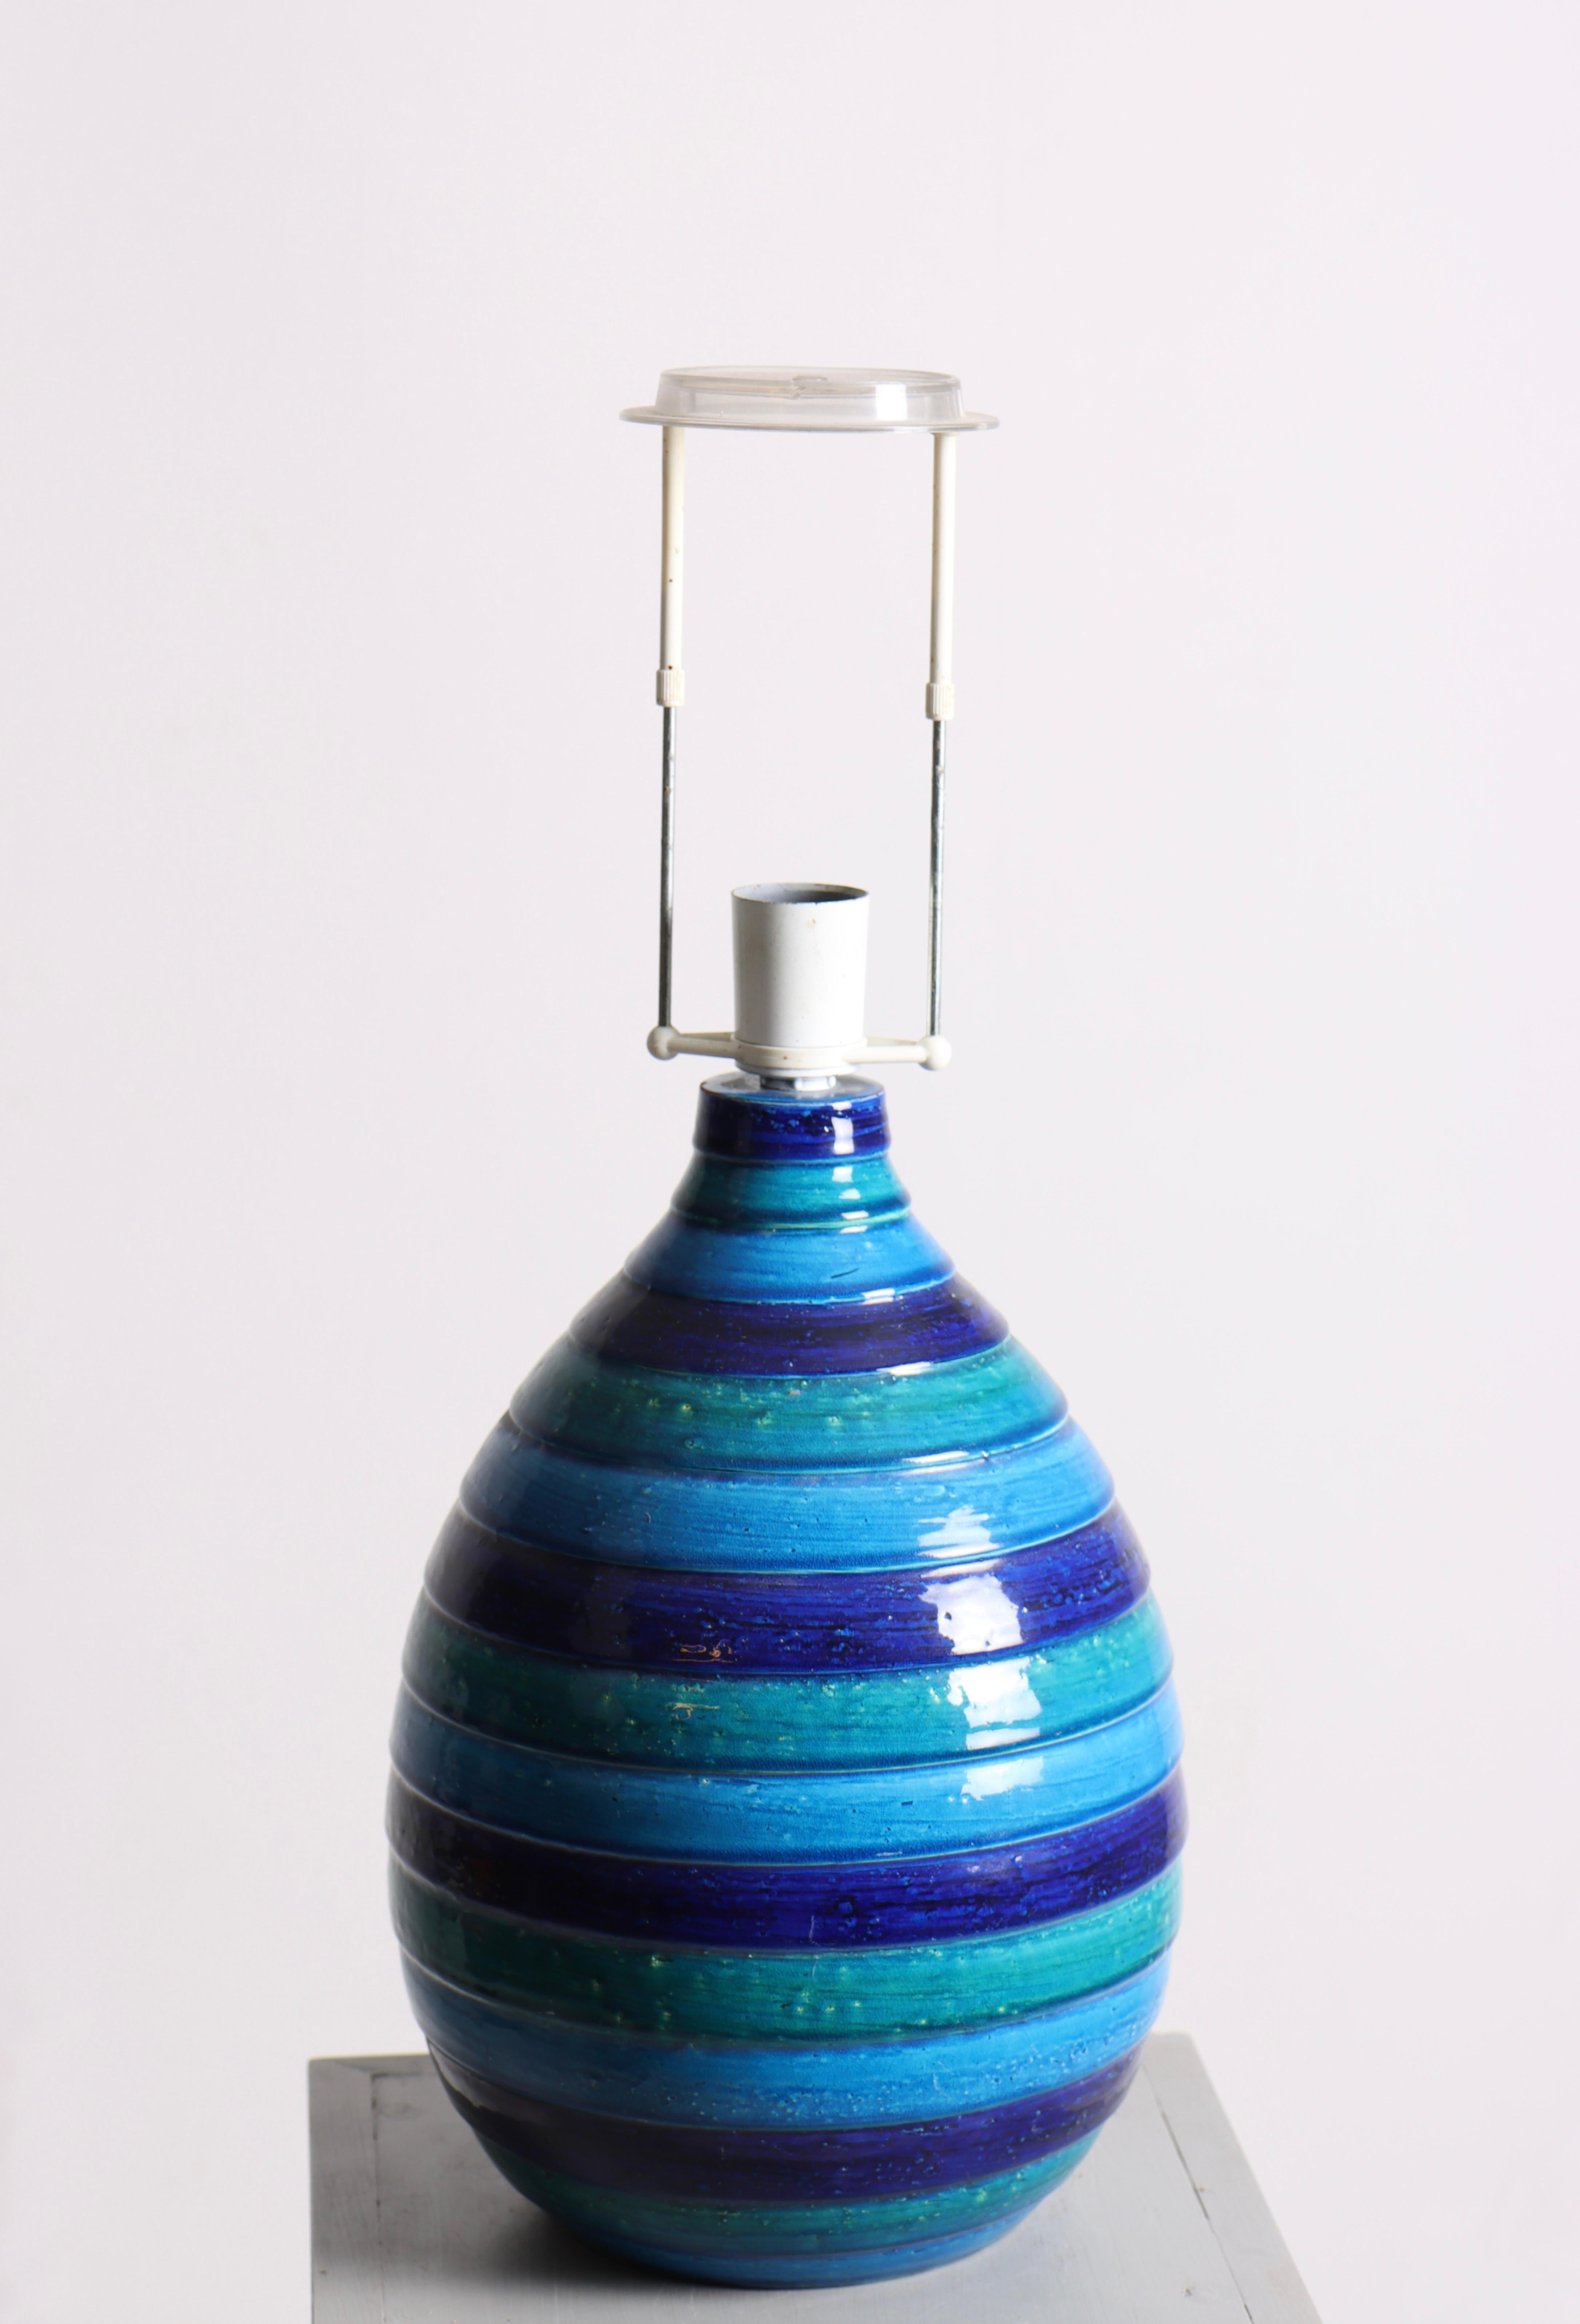 Italian Midcentury Table Lamp in Ceramic by Aldo Londi, 1960s For Sale